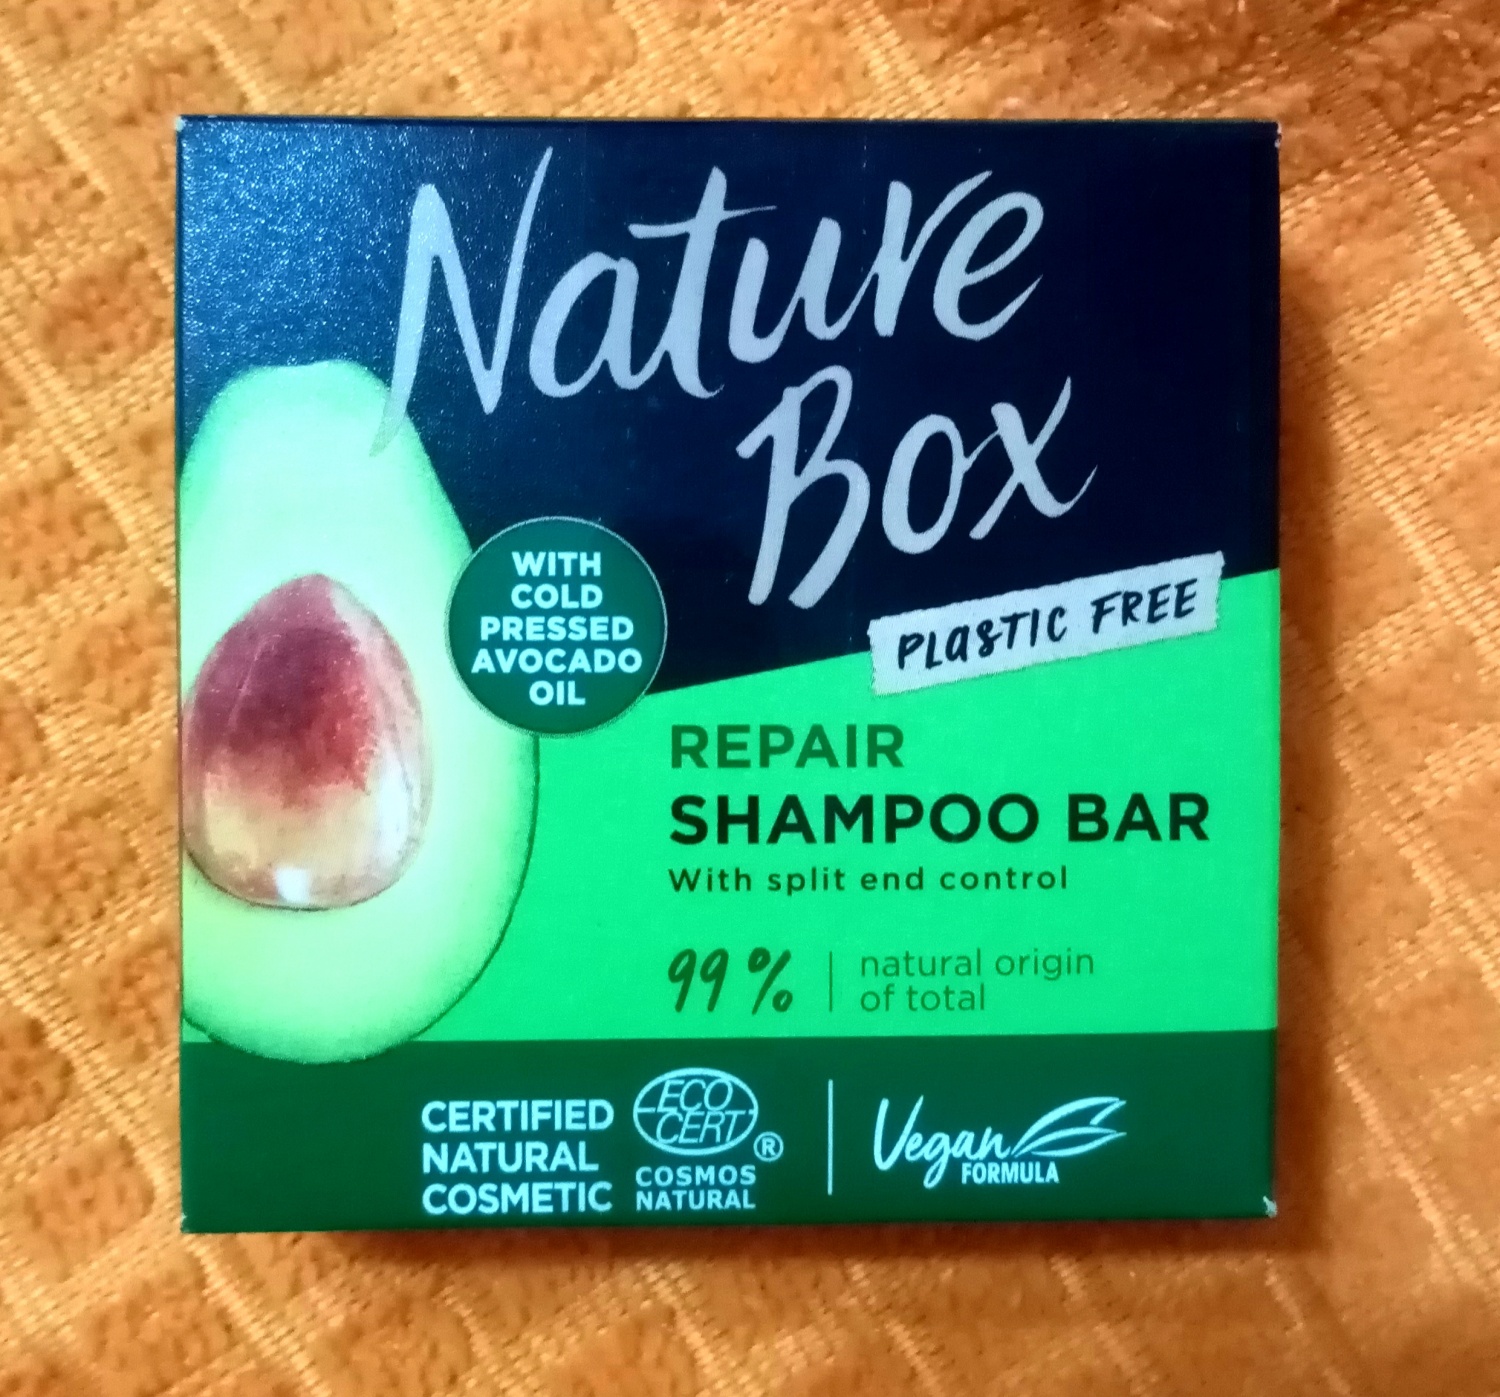 Natural box